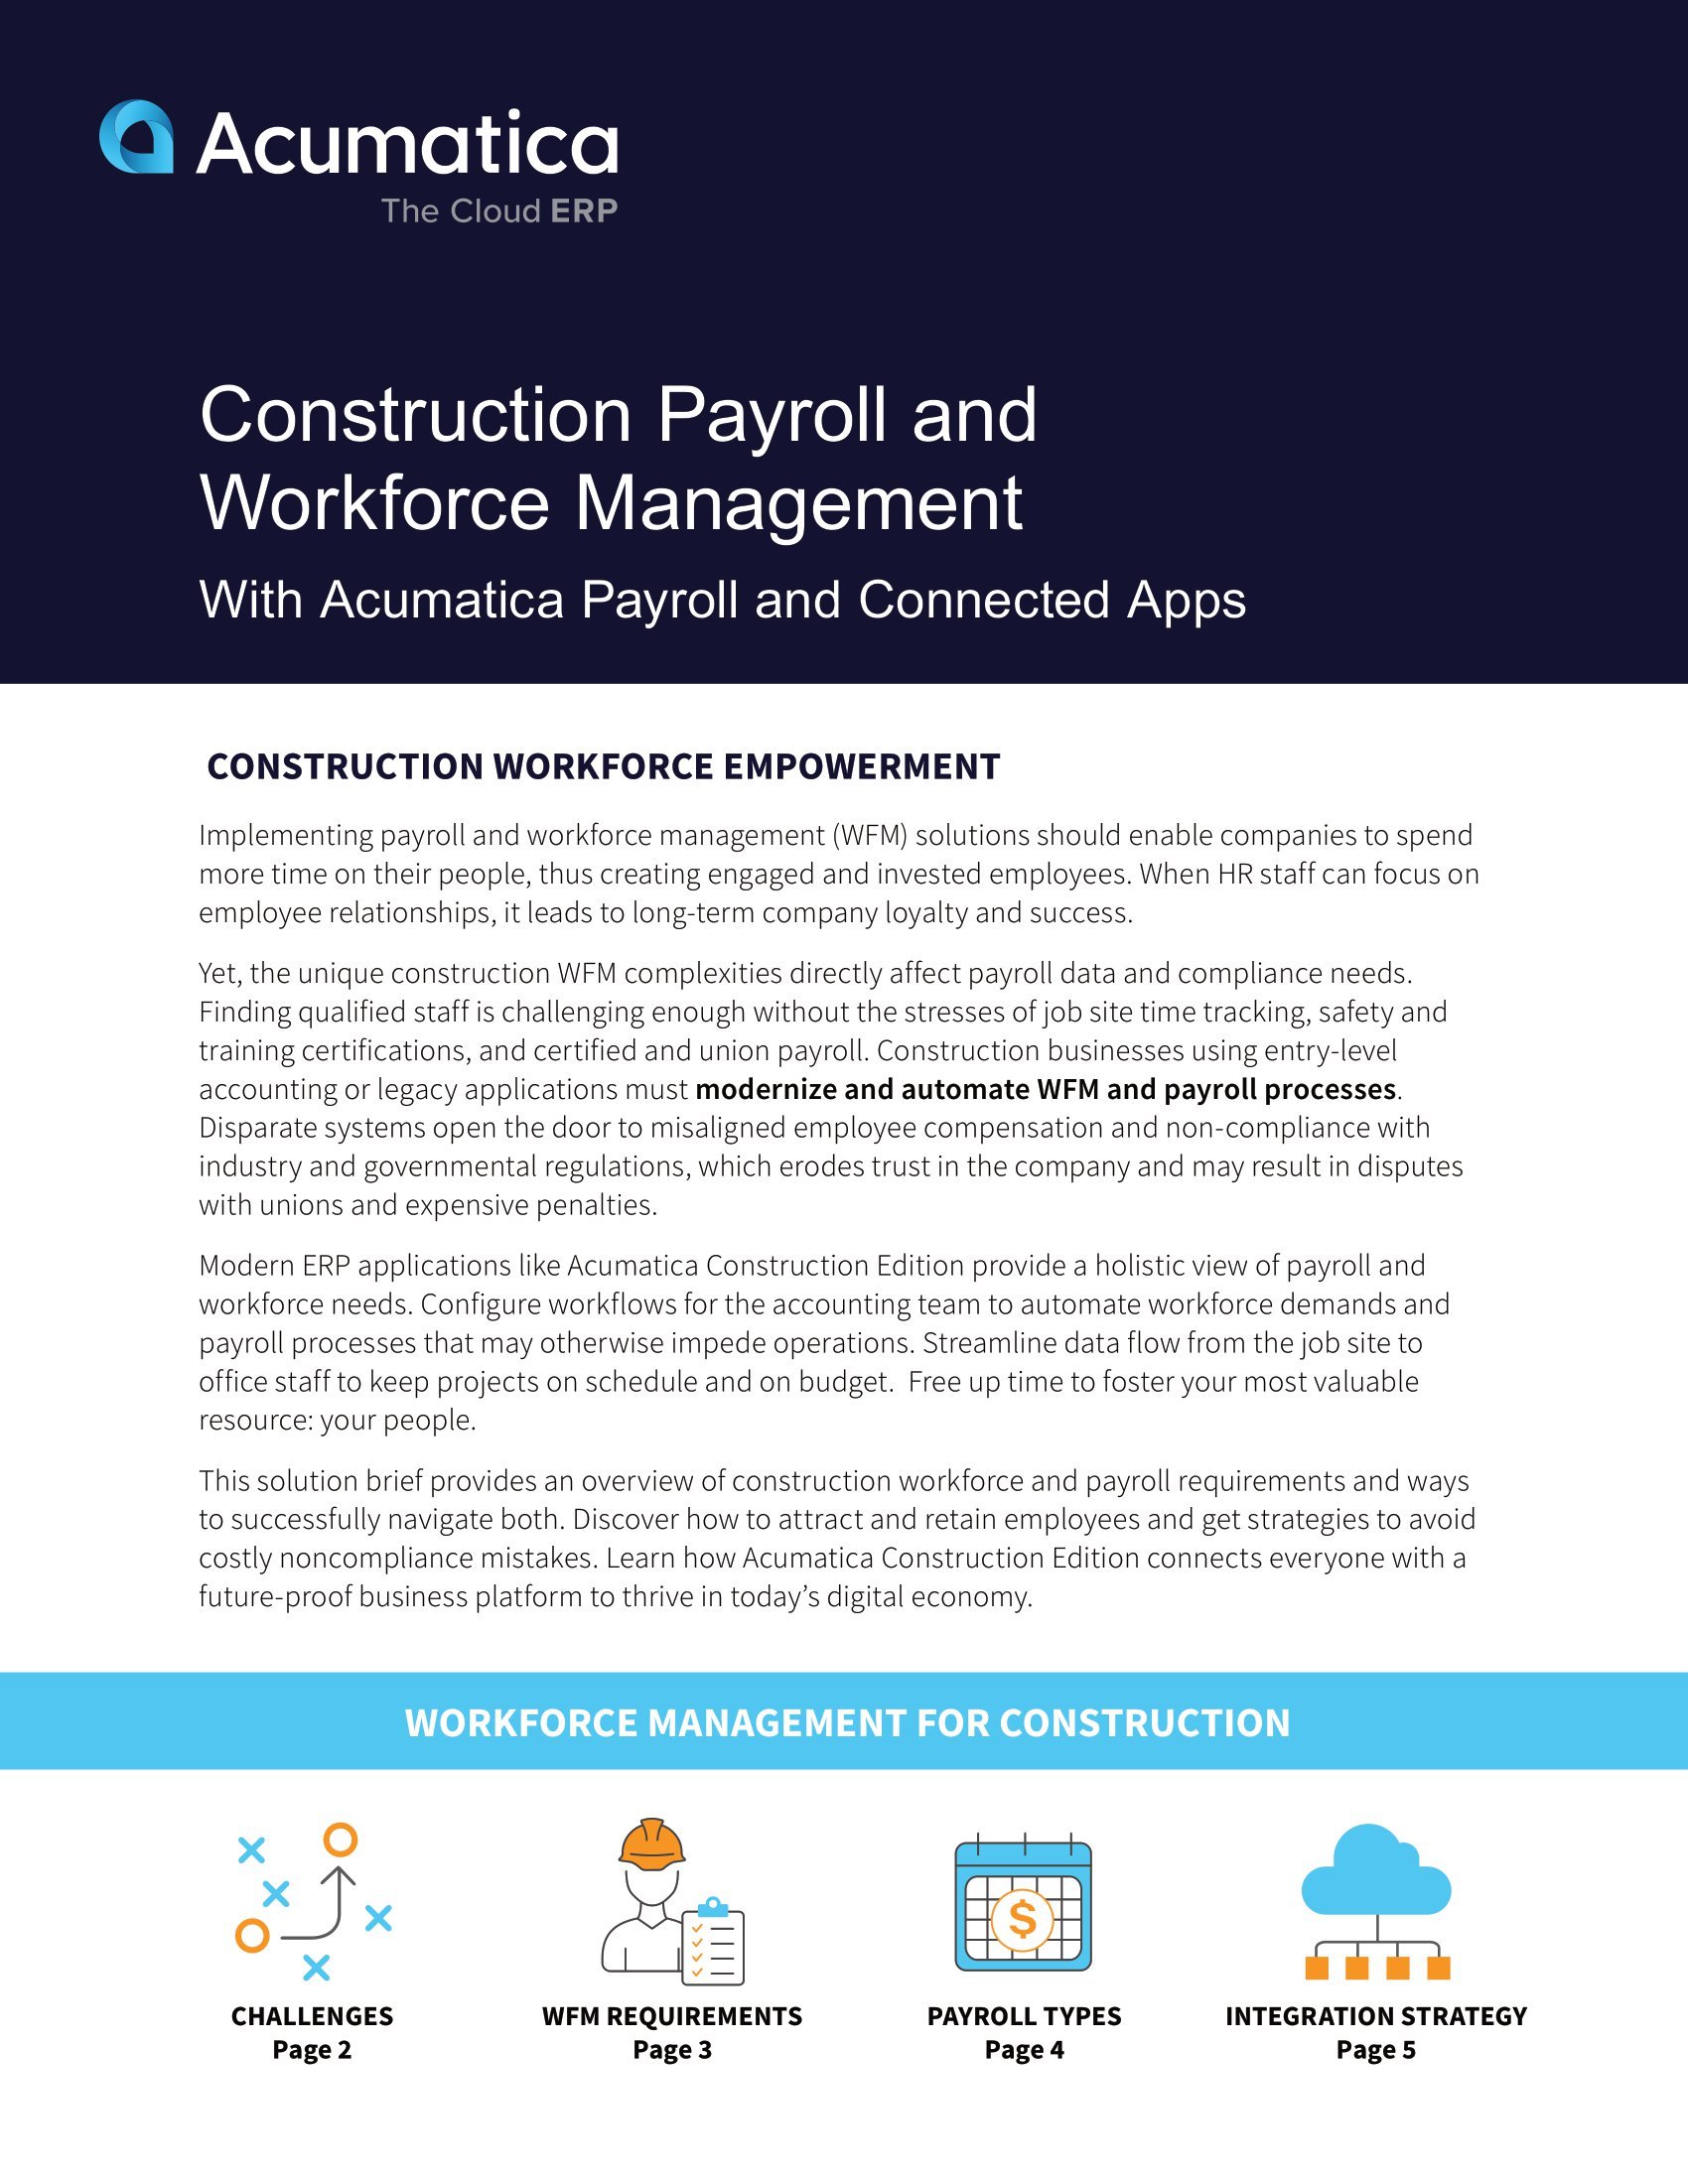 Comment Acumatica Construction Edition aide les entreprises de construction à surmonter les défis courants de la main-d’œuvre et de la paie